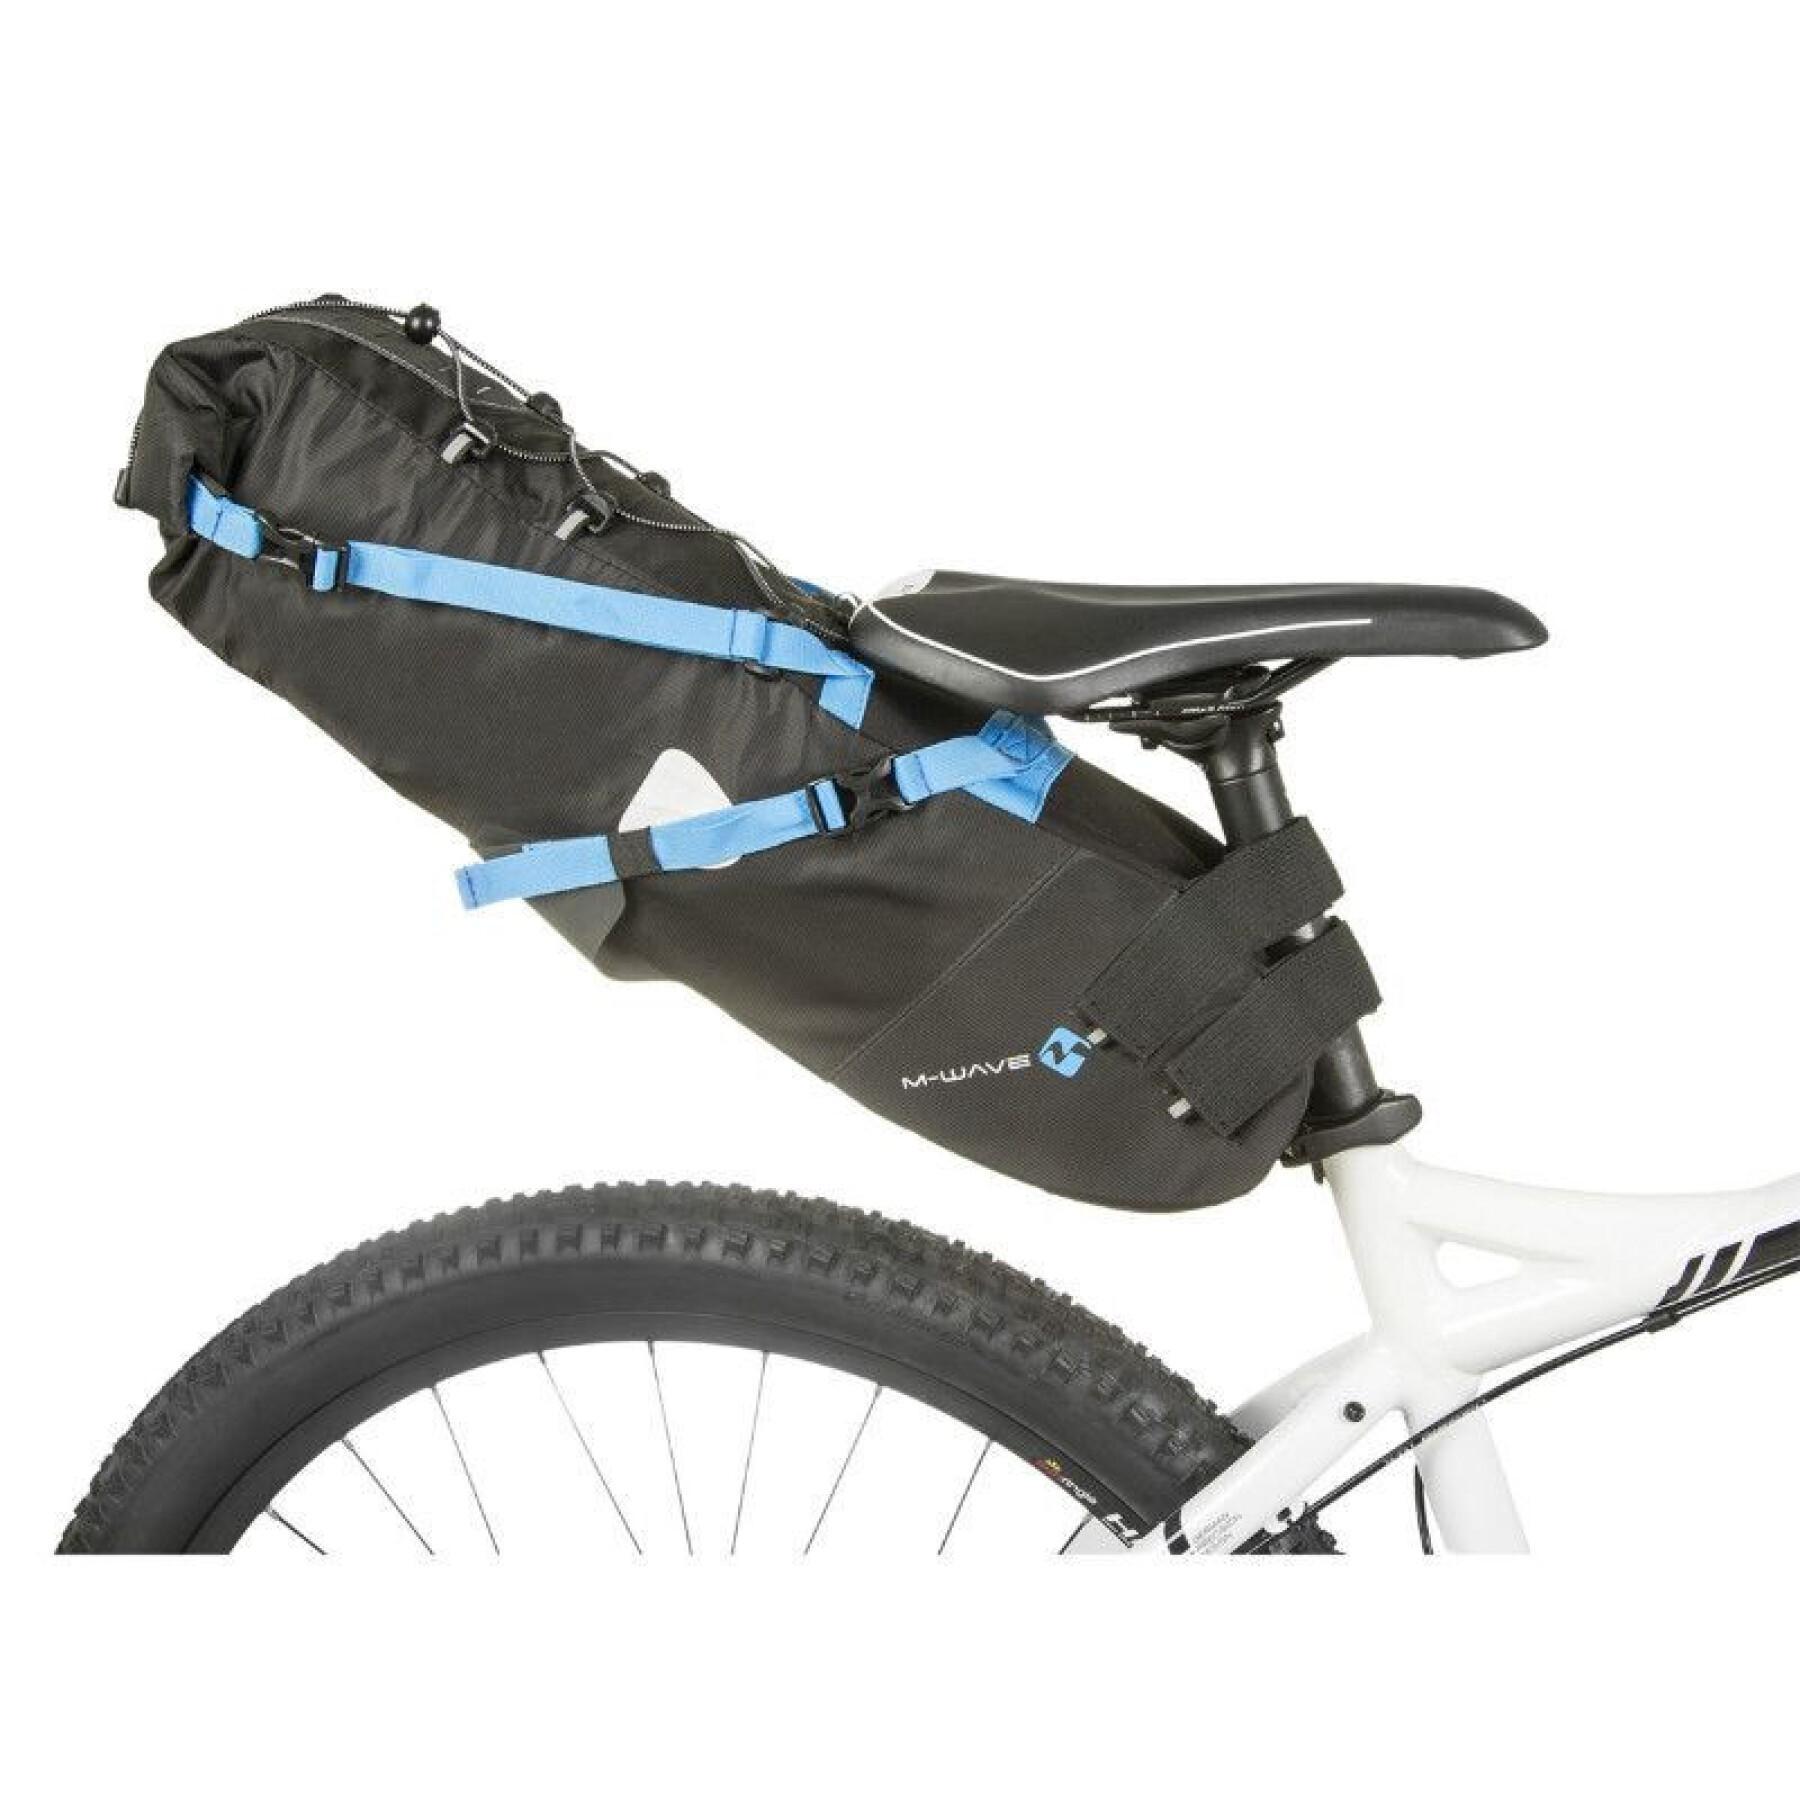 Wasserdichte Fahrradsatteltasche mit Klettverschluss P2R 50 x 15 x 15 cm 5kgs